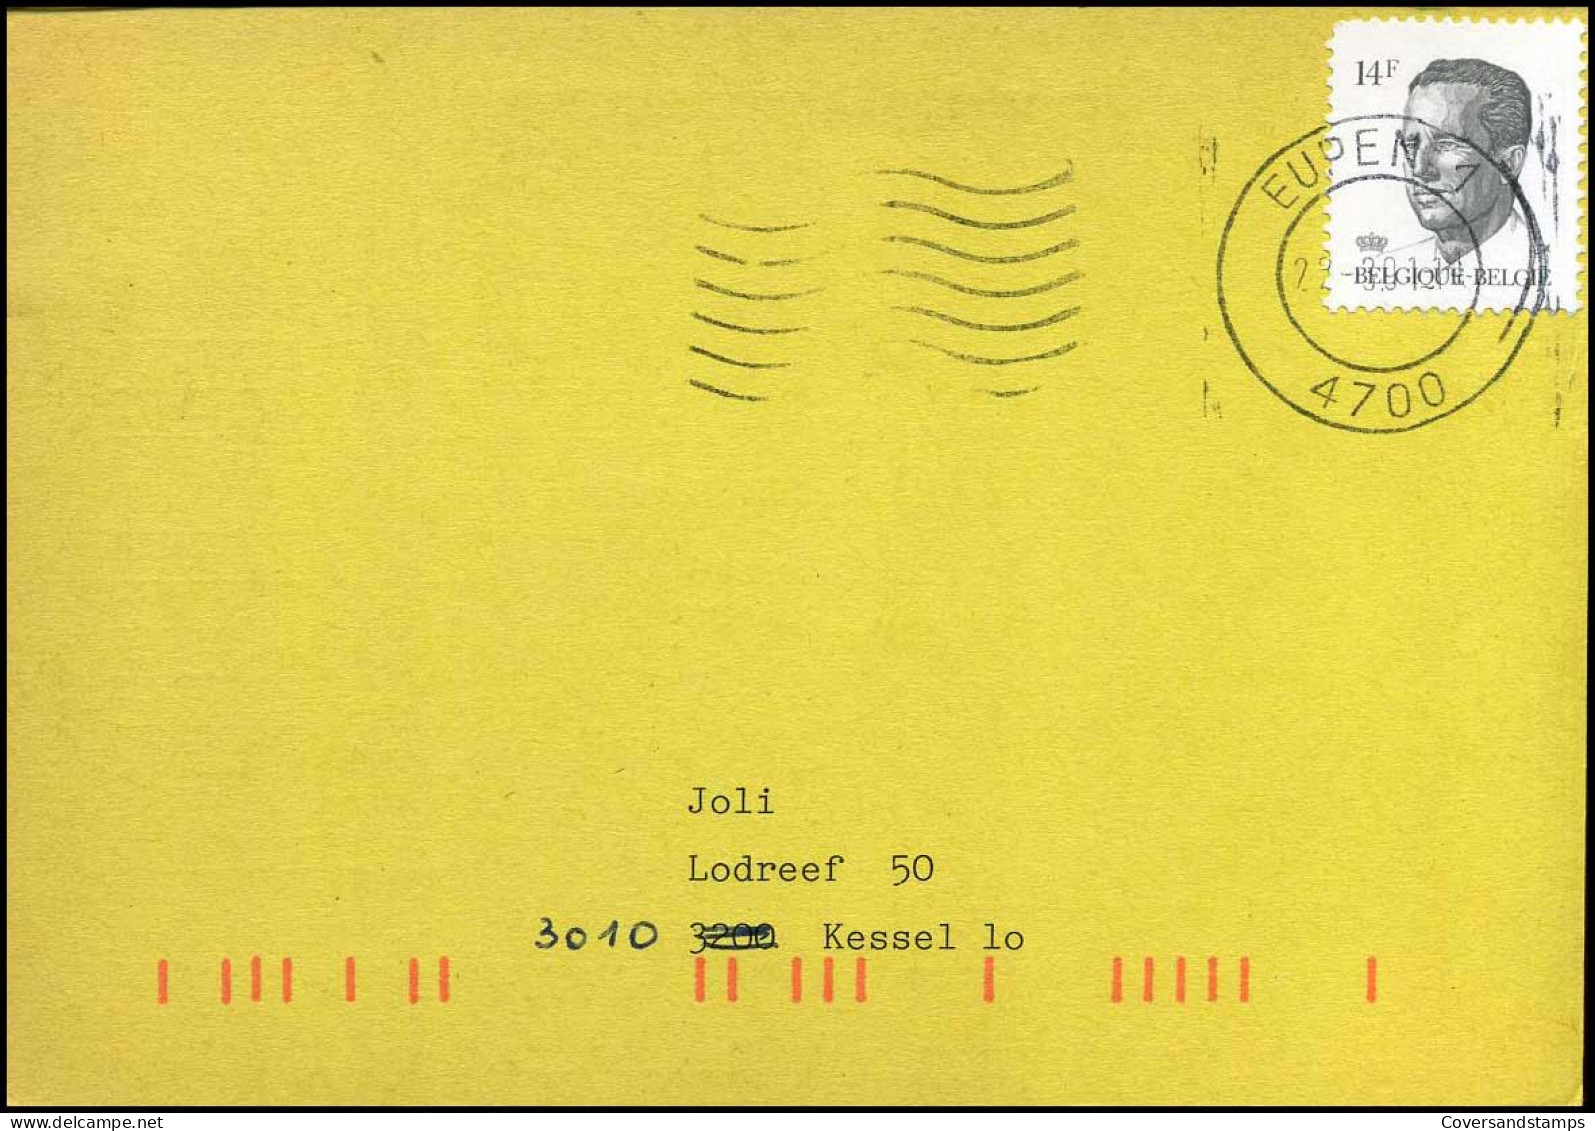 Postkaart : "Uitnamen - Prélêvements" Kring Nr 3008 - Lettres & Documents